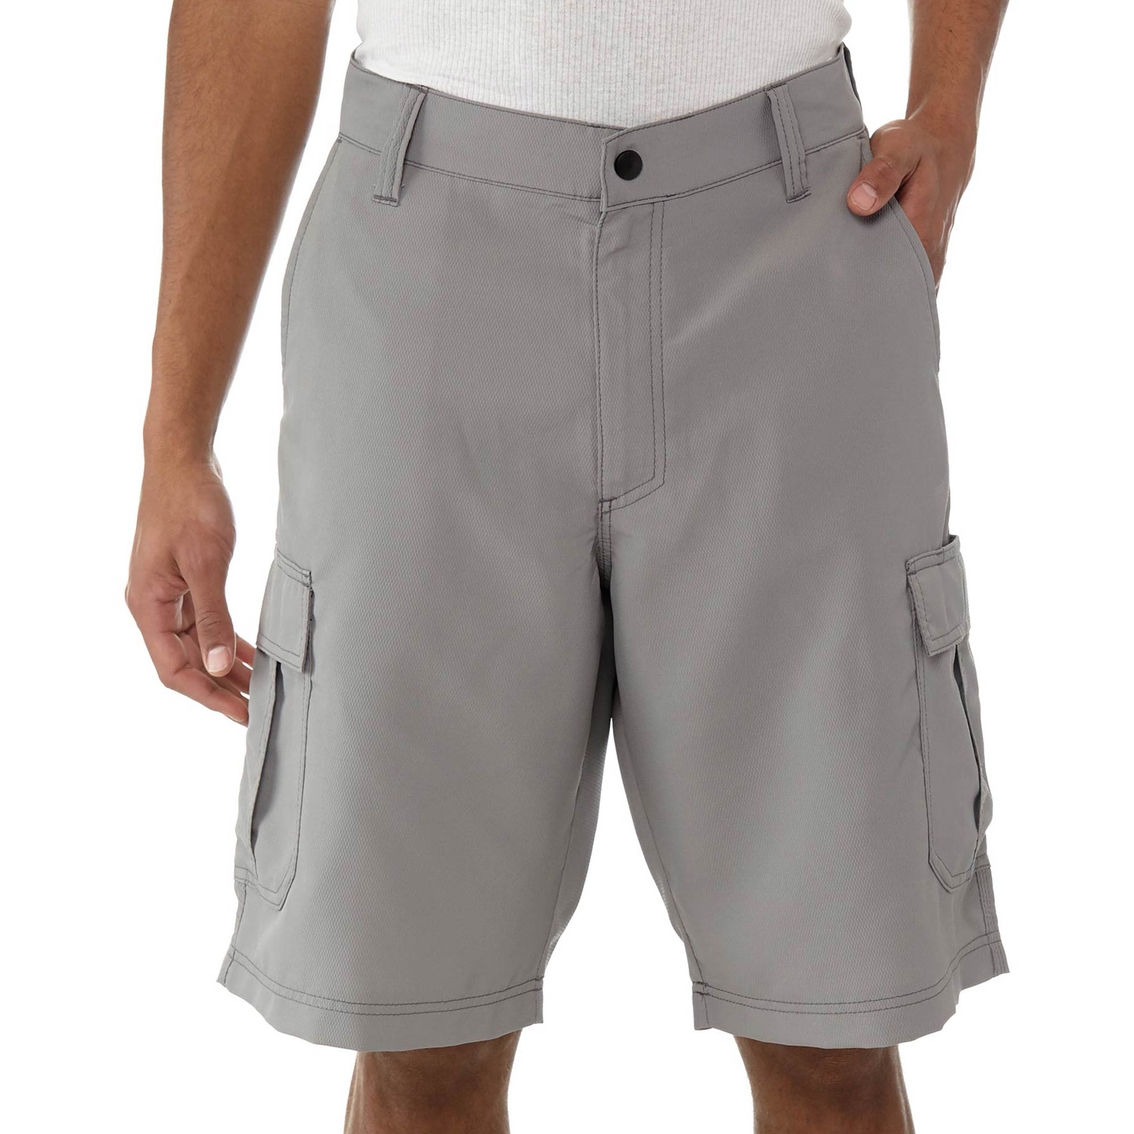 Lee Dungarees Performance Cargo Shorts | Shorts | Clothing ...